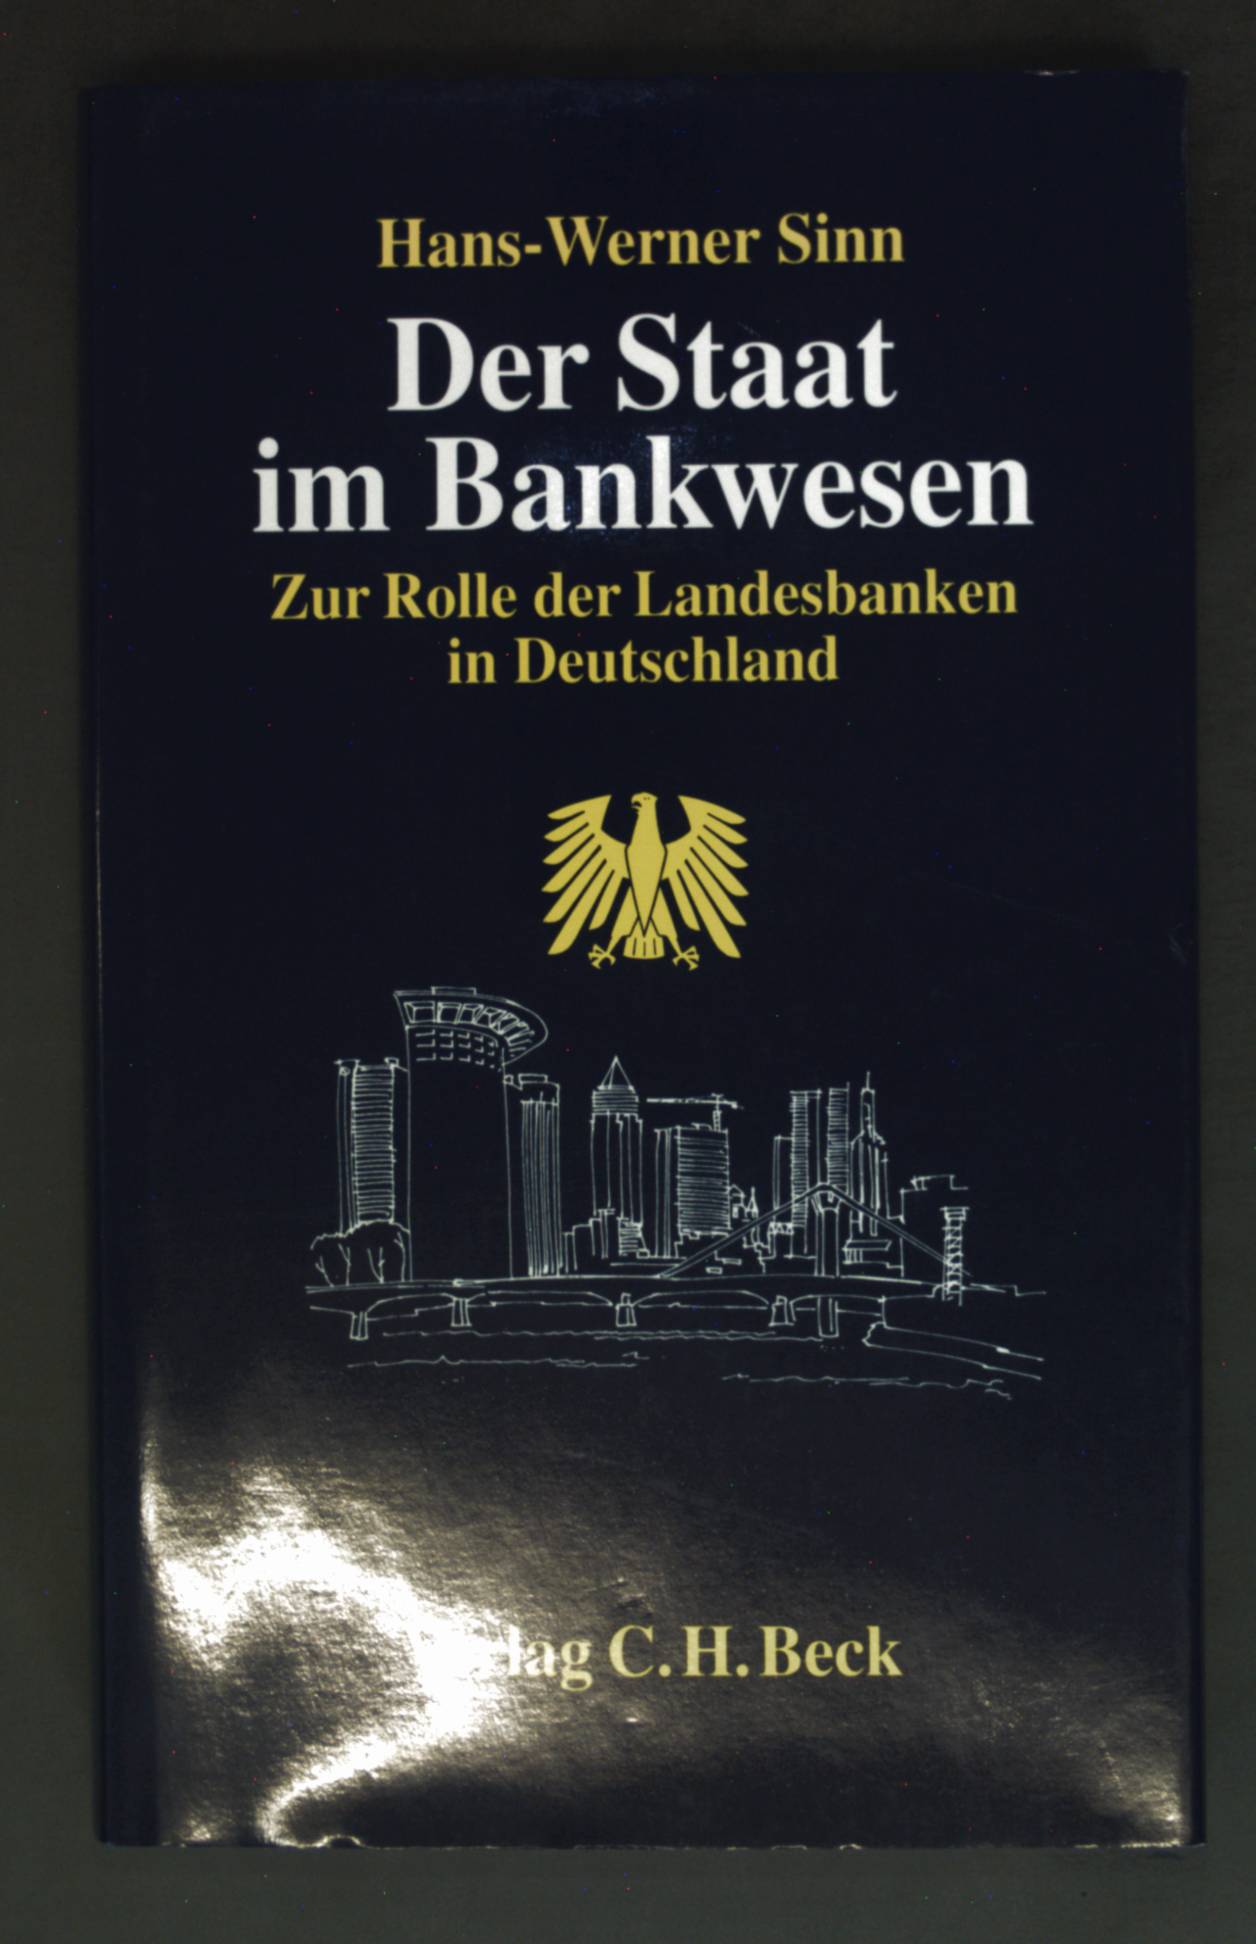 Der Staat im Bankwesen : zur Rolle der Landesbanken in Deutschland. - Sinn, Hans-Werner